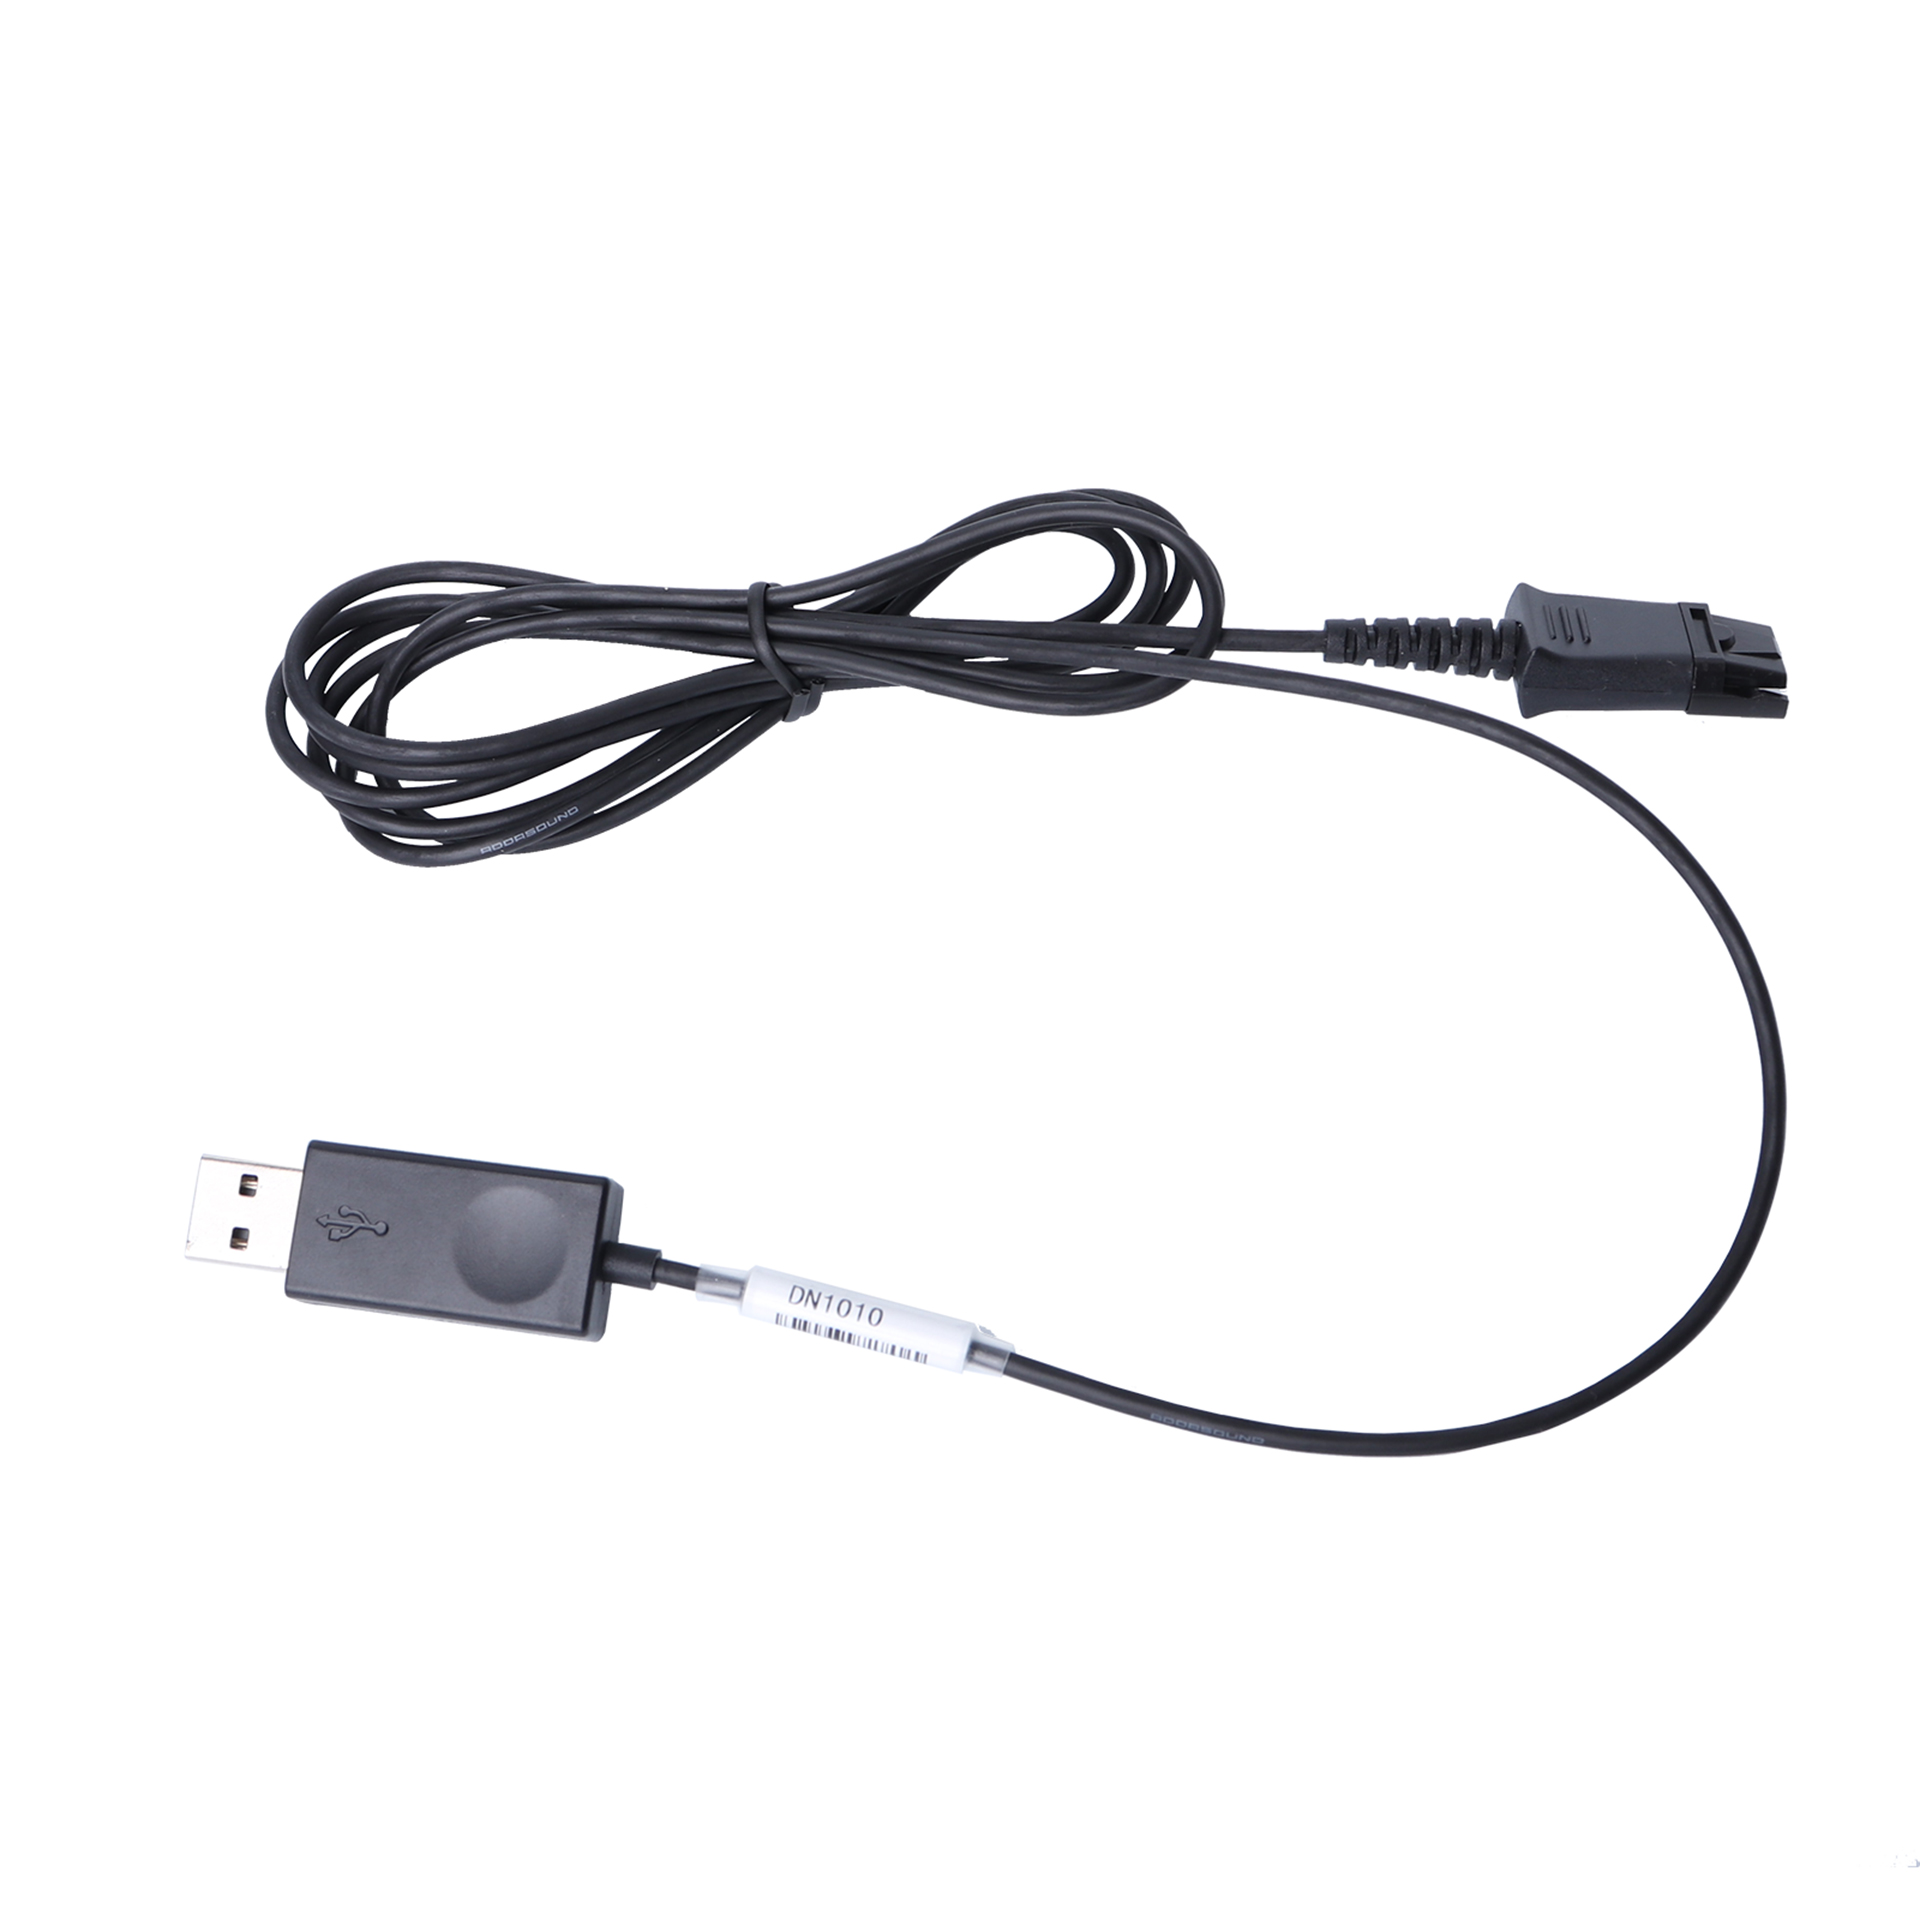 Addasound Anschlusskabel DN1010, PLX-QD zu USB